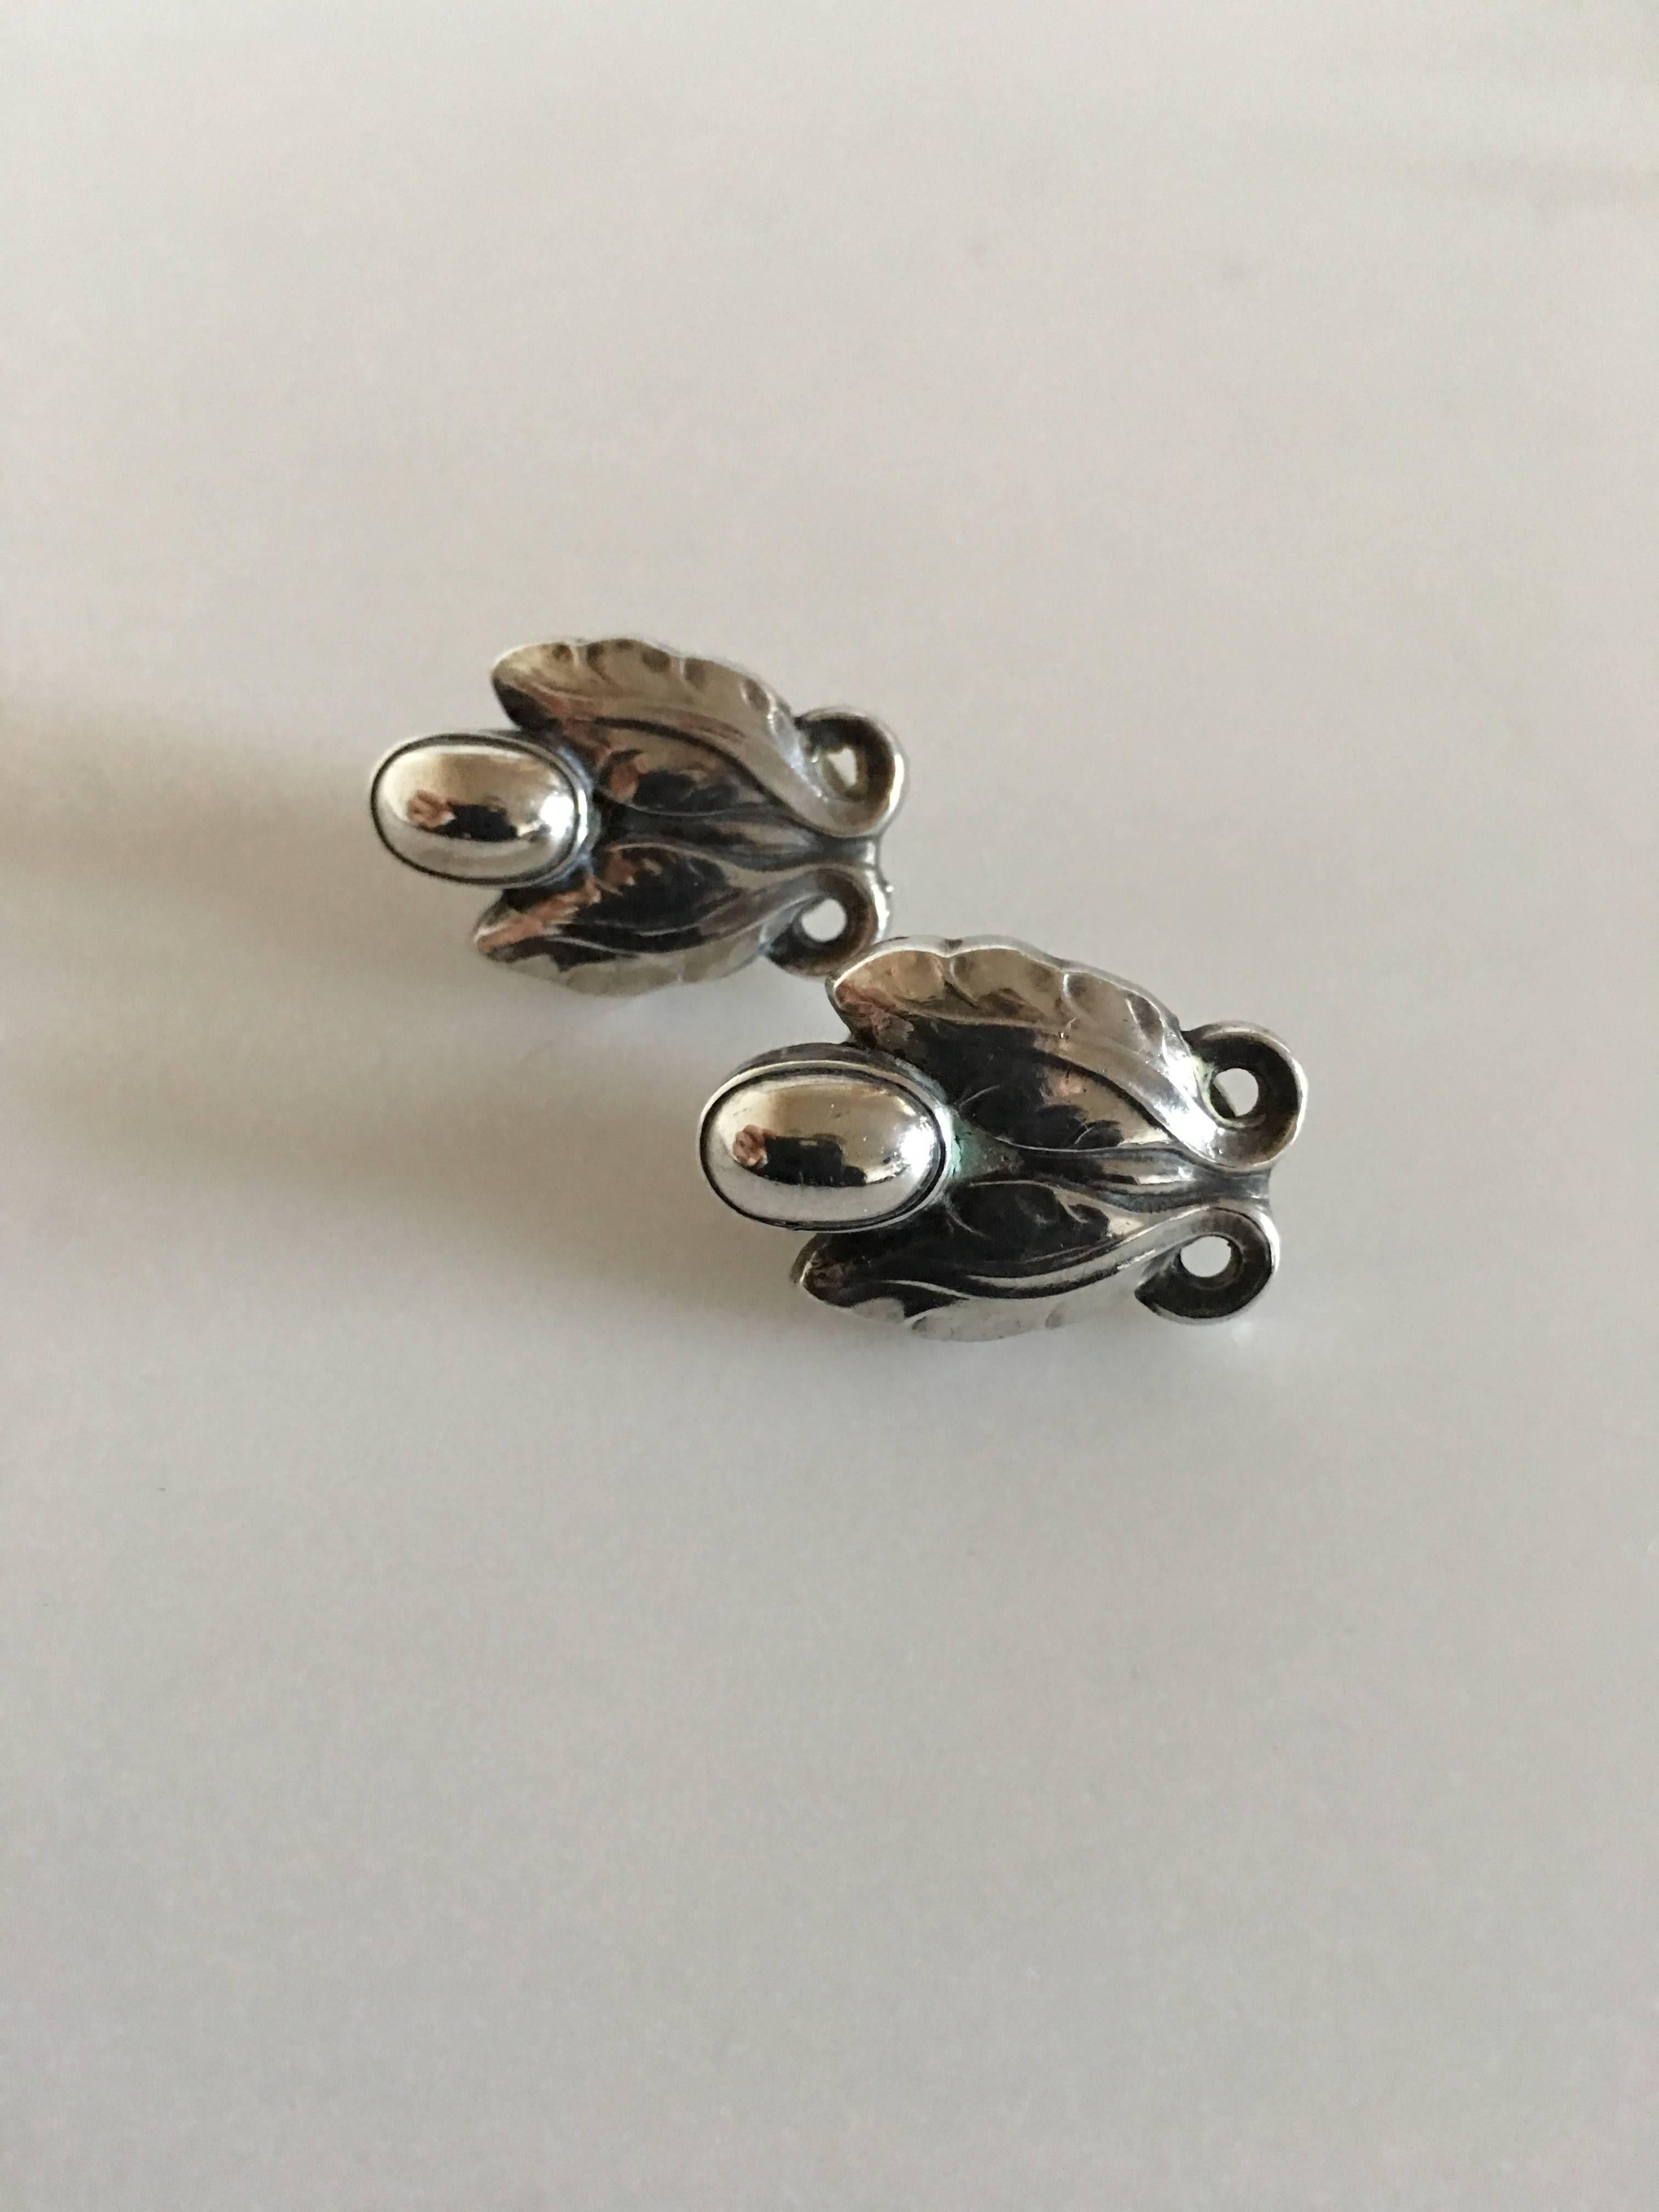 Georg Jensen sterling silver ear clips #108. Measures 2.3cm / 9/10